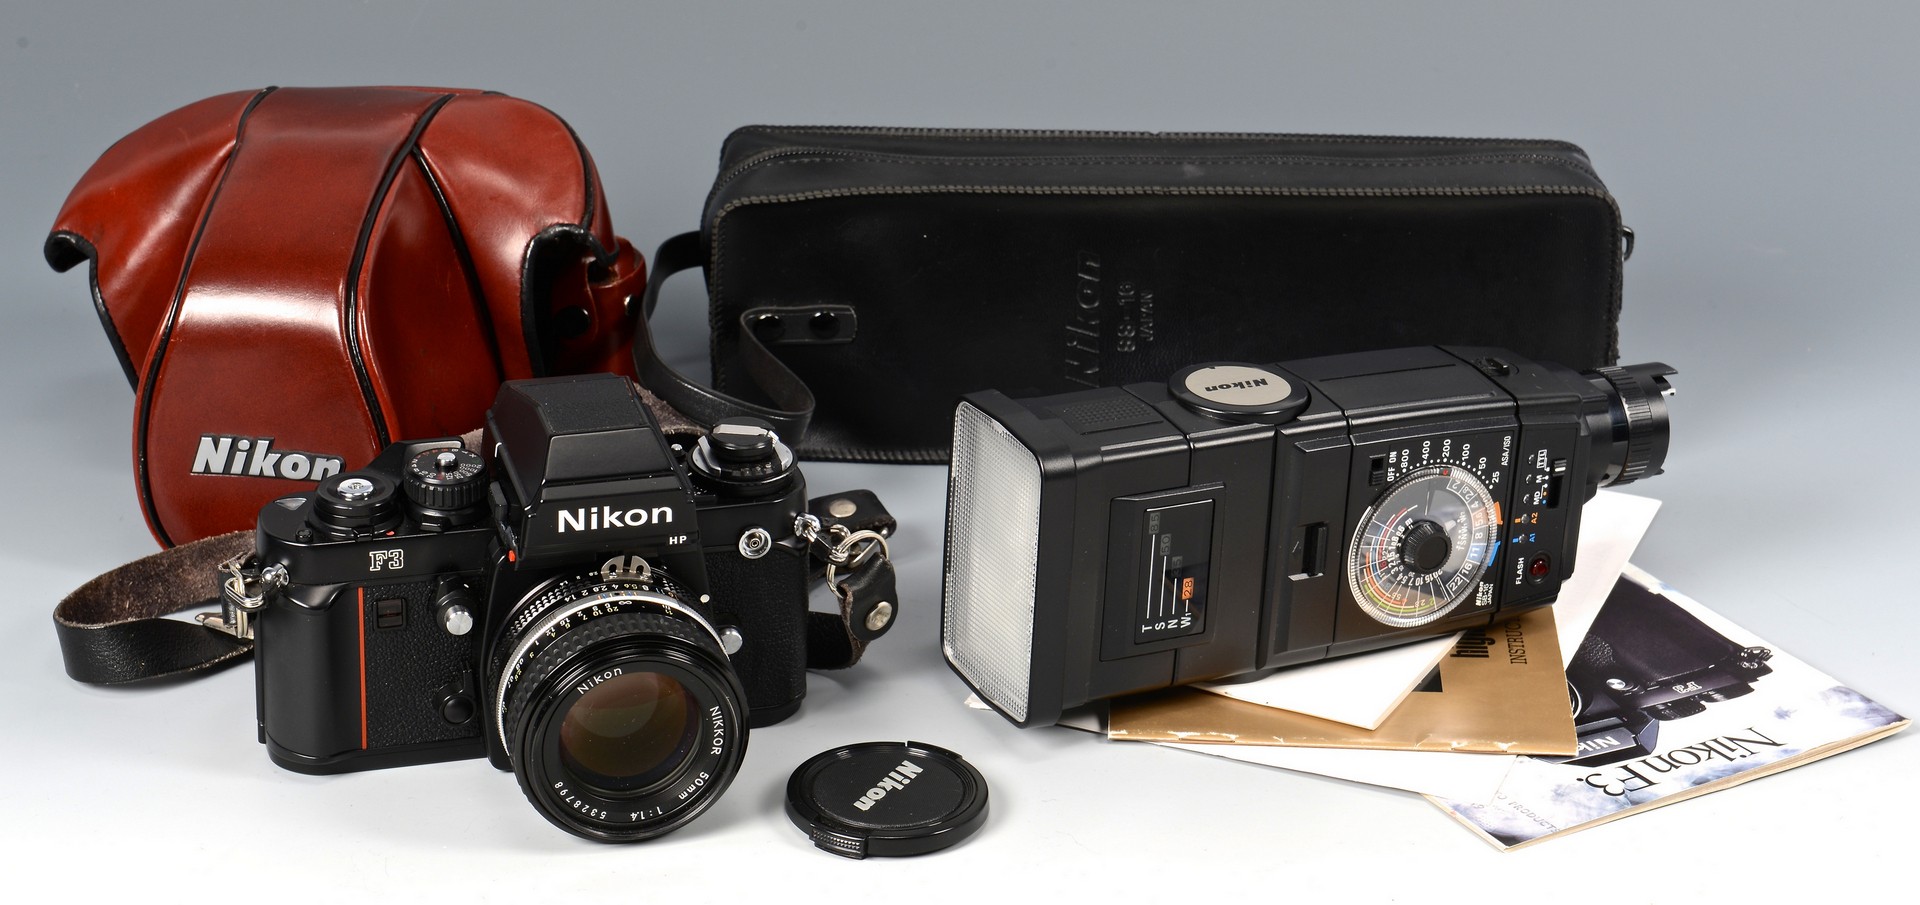 Lot 838: Nikon F3 Camera w/ Accessories & Manual